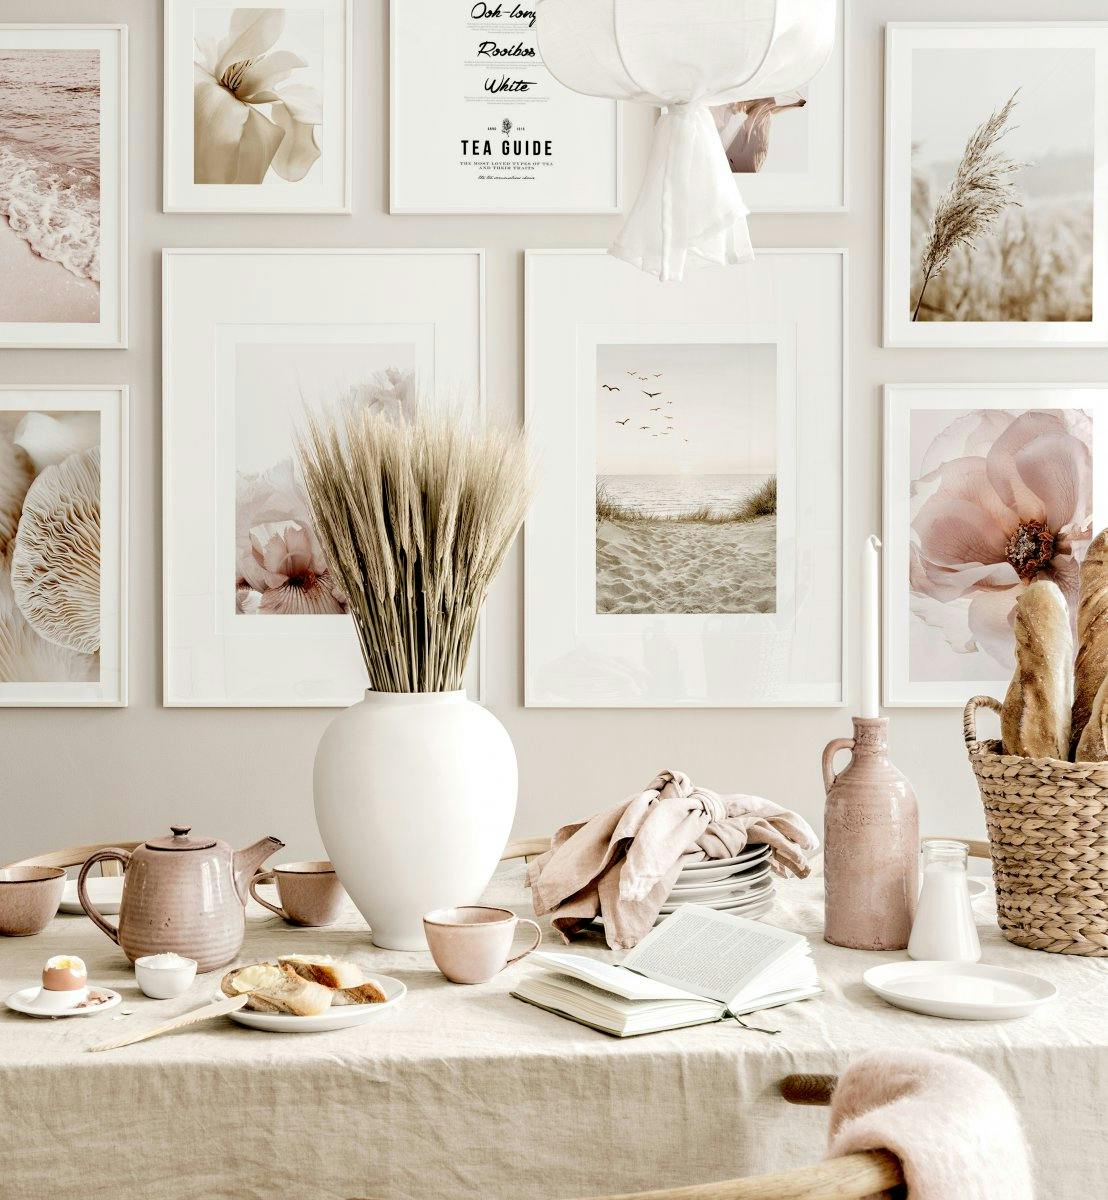 معرض لوحة صور الشاطئ الهادئ في غرفة الطعام لجدران اللون البيج الوردي مع إطارات خشبية بيضاء